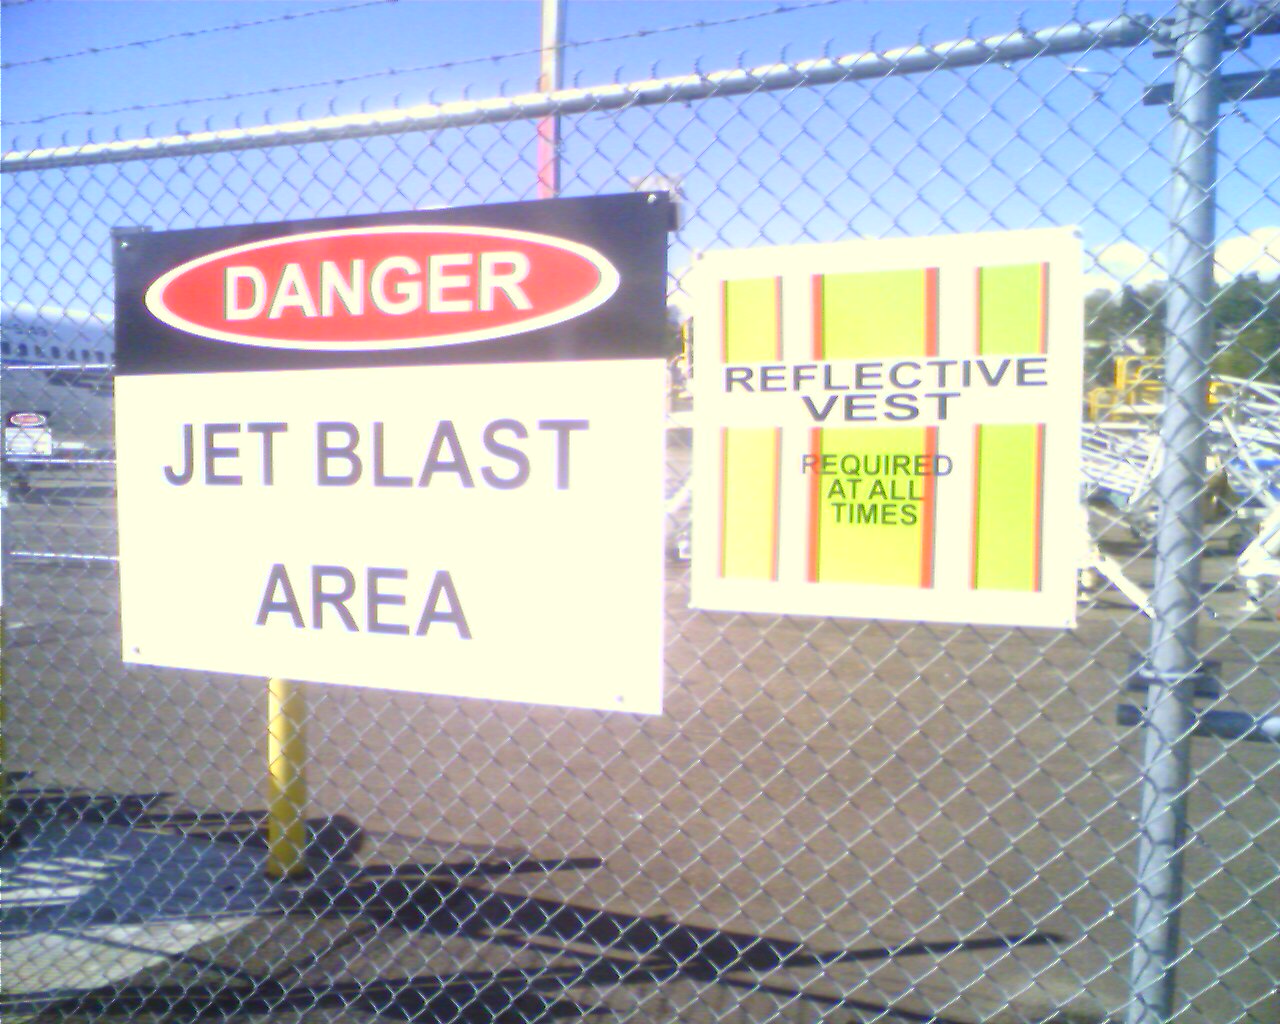 Jet blast